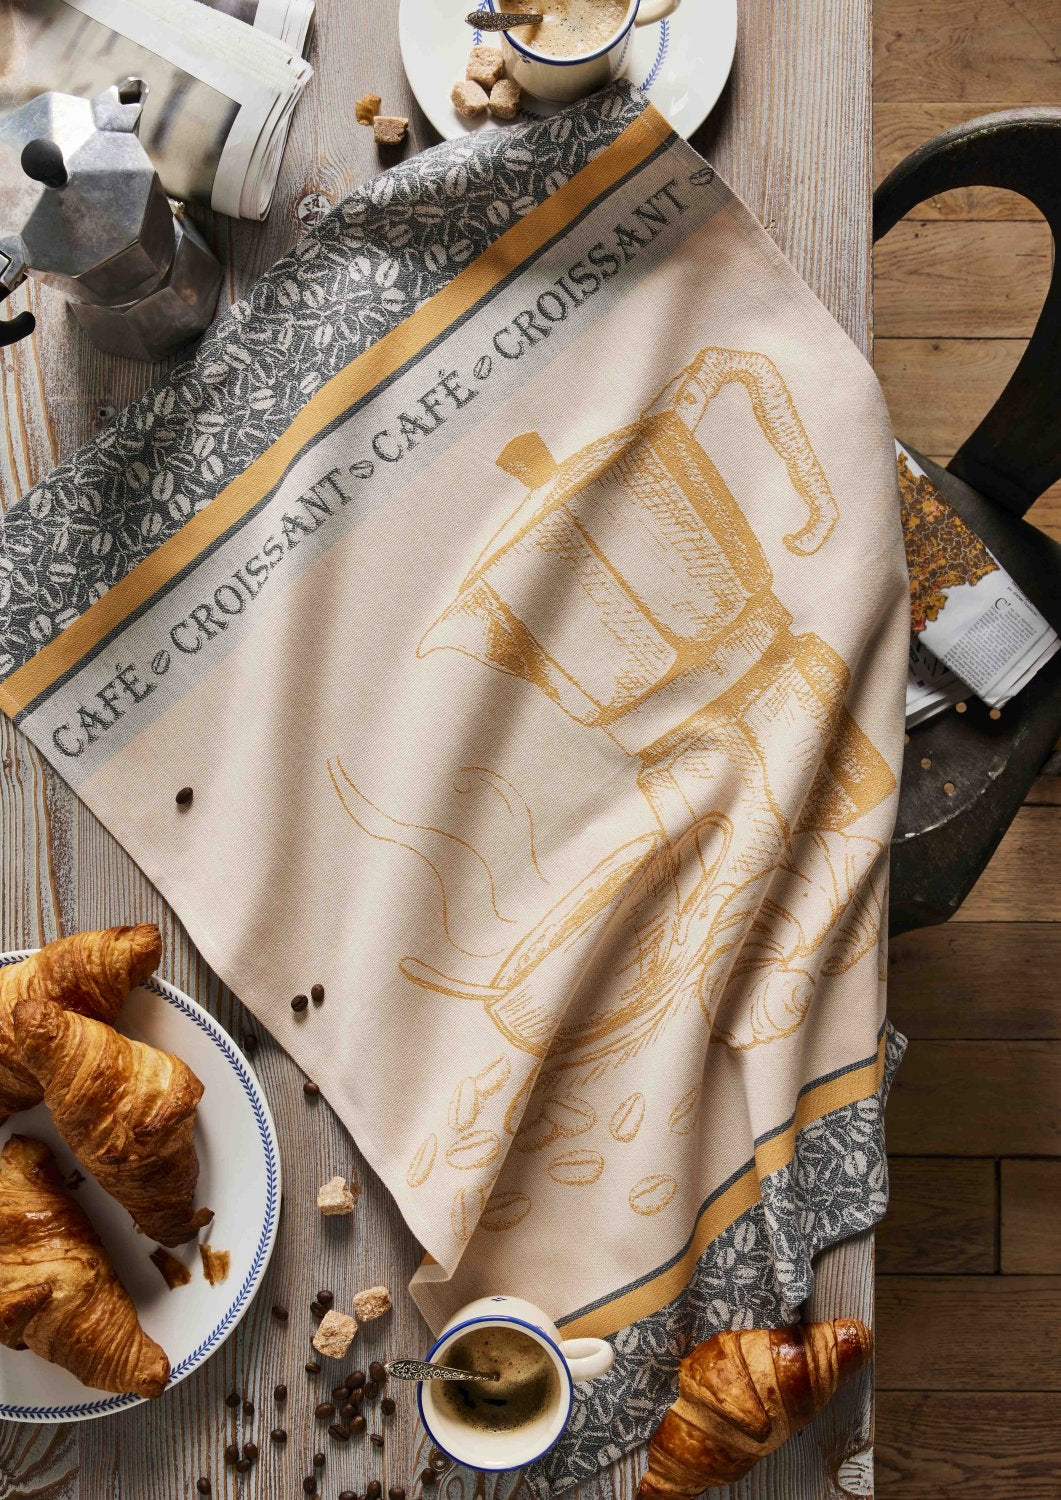 Coucke " Café Croissant", Woven cotton tea towel. Designed in France.